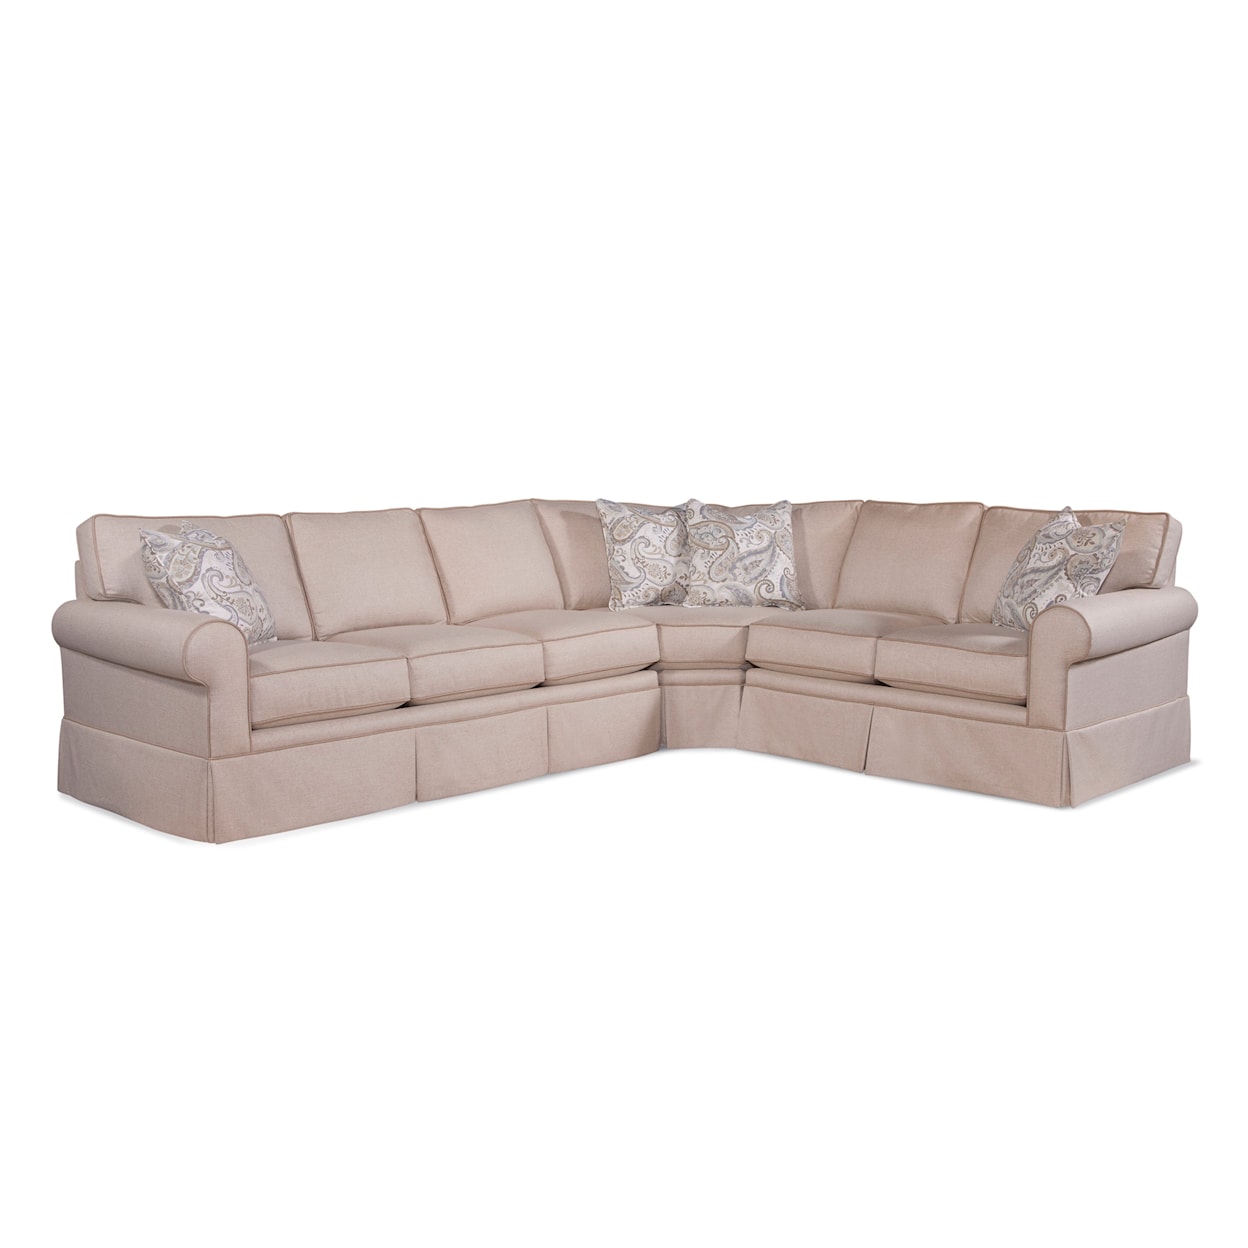 Braxton Culler Benton 3-Piece Sectional Sofa